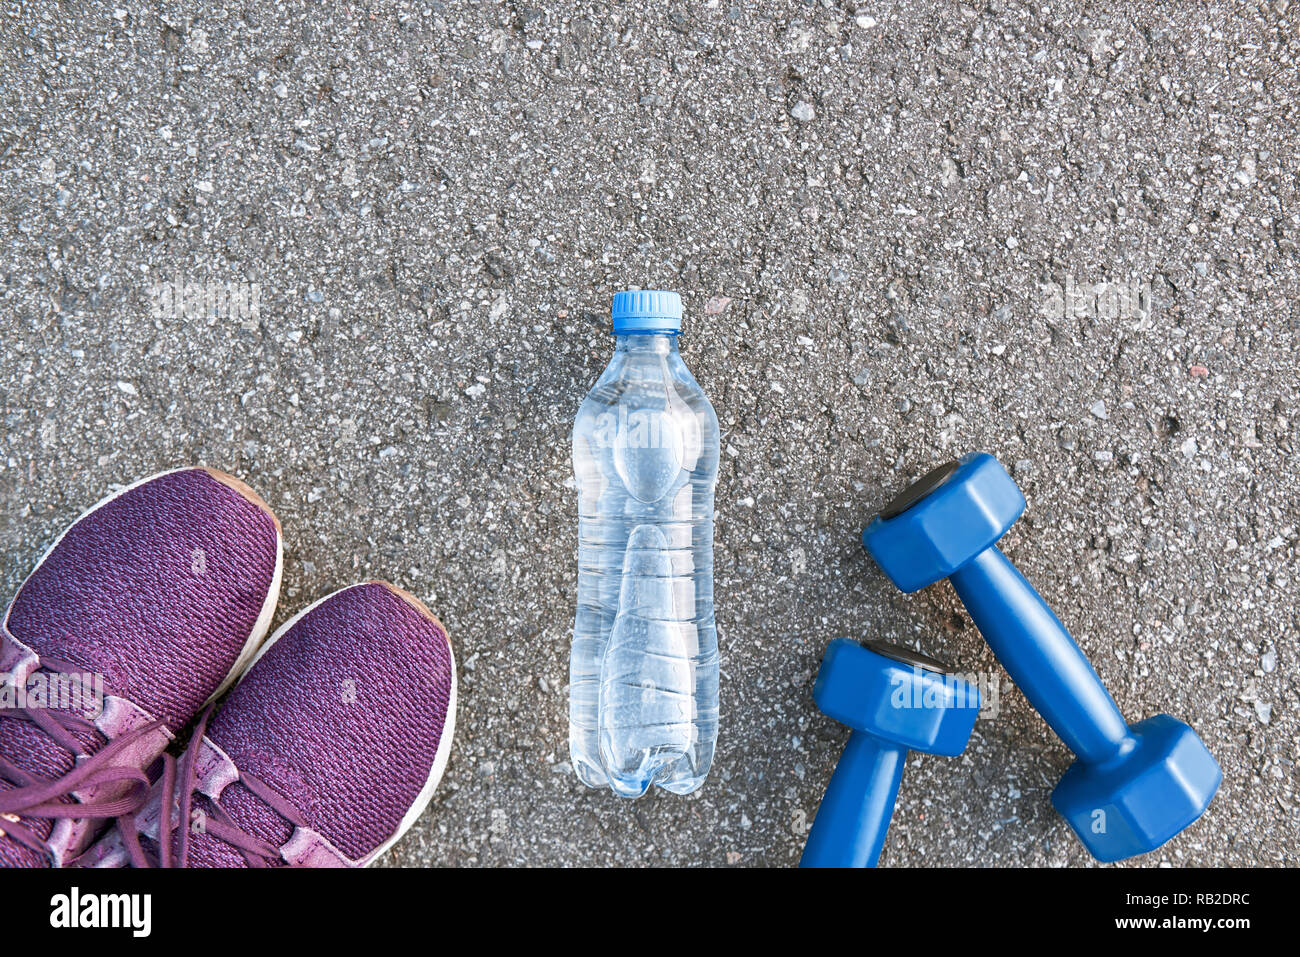 Motiviert zum Training. Zwei blaue dumpbells und eine Flasche Wasser liegen in der Nähe von Purple Sport Schuhe Stockfoto